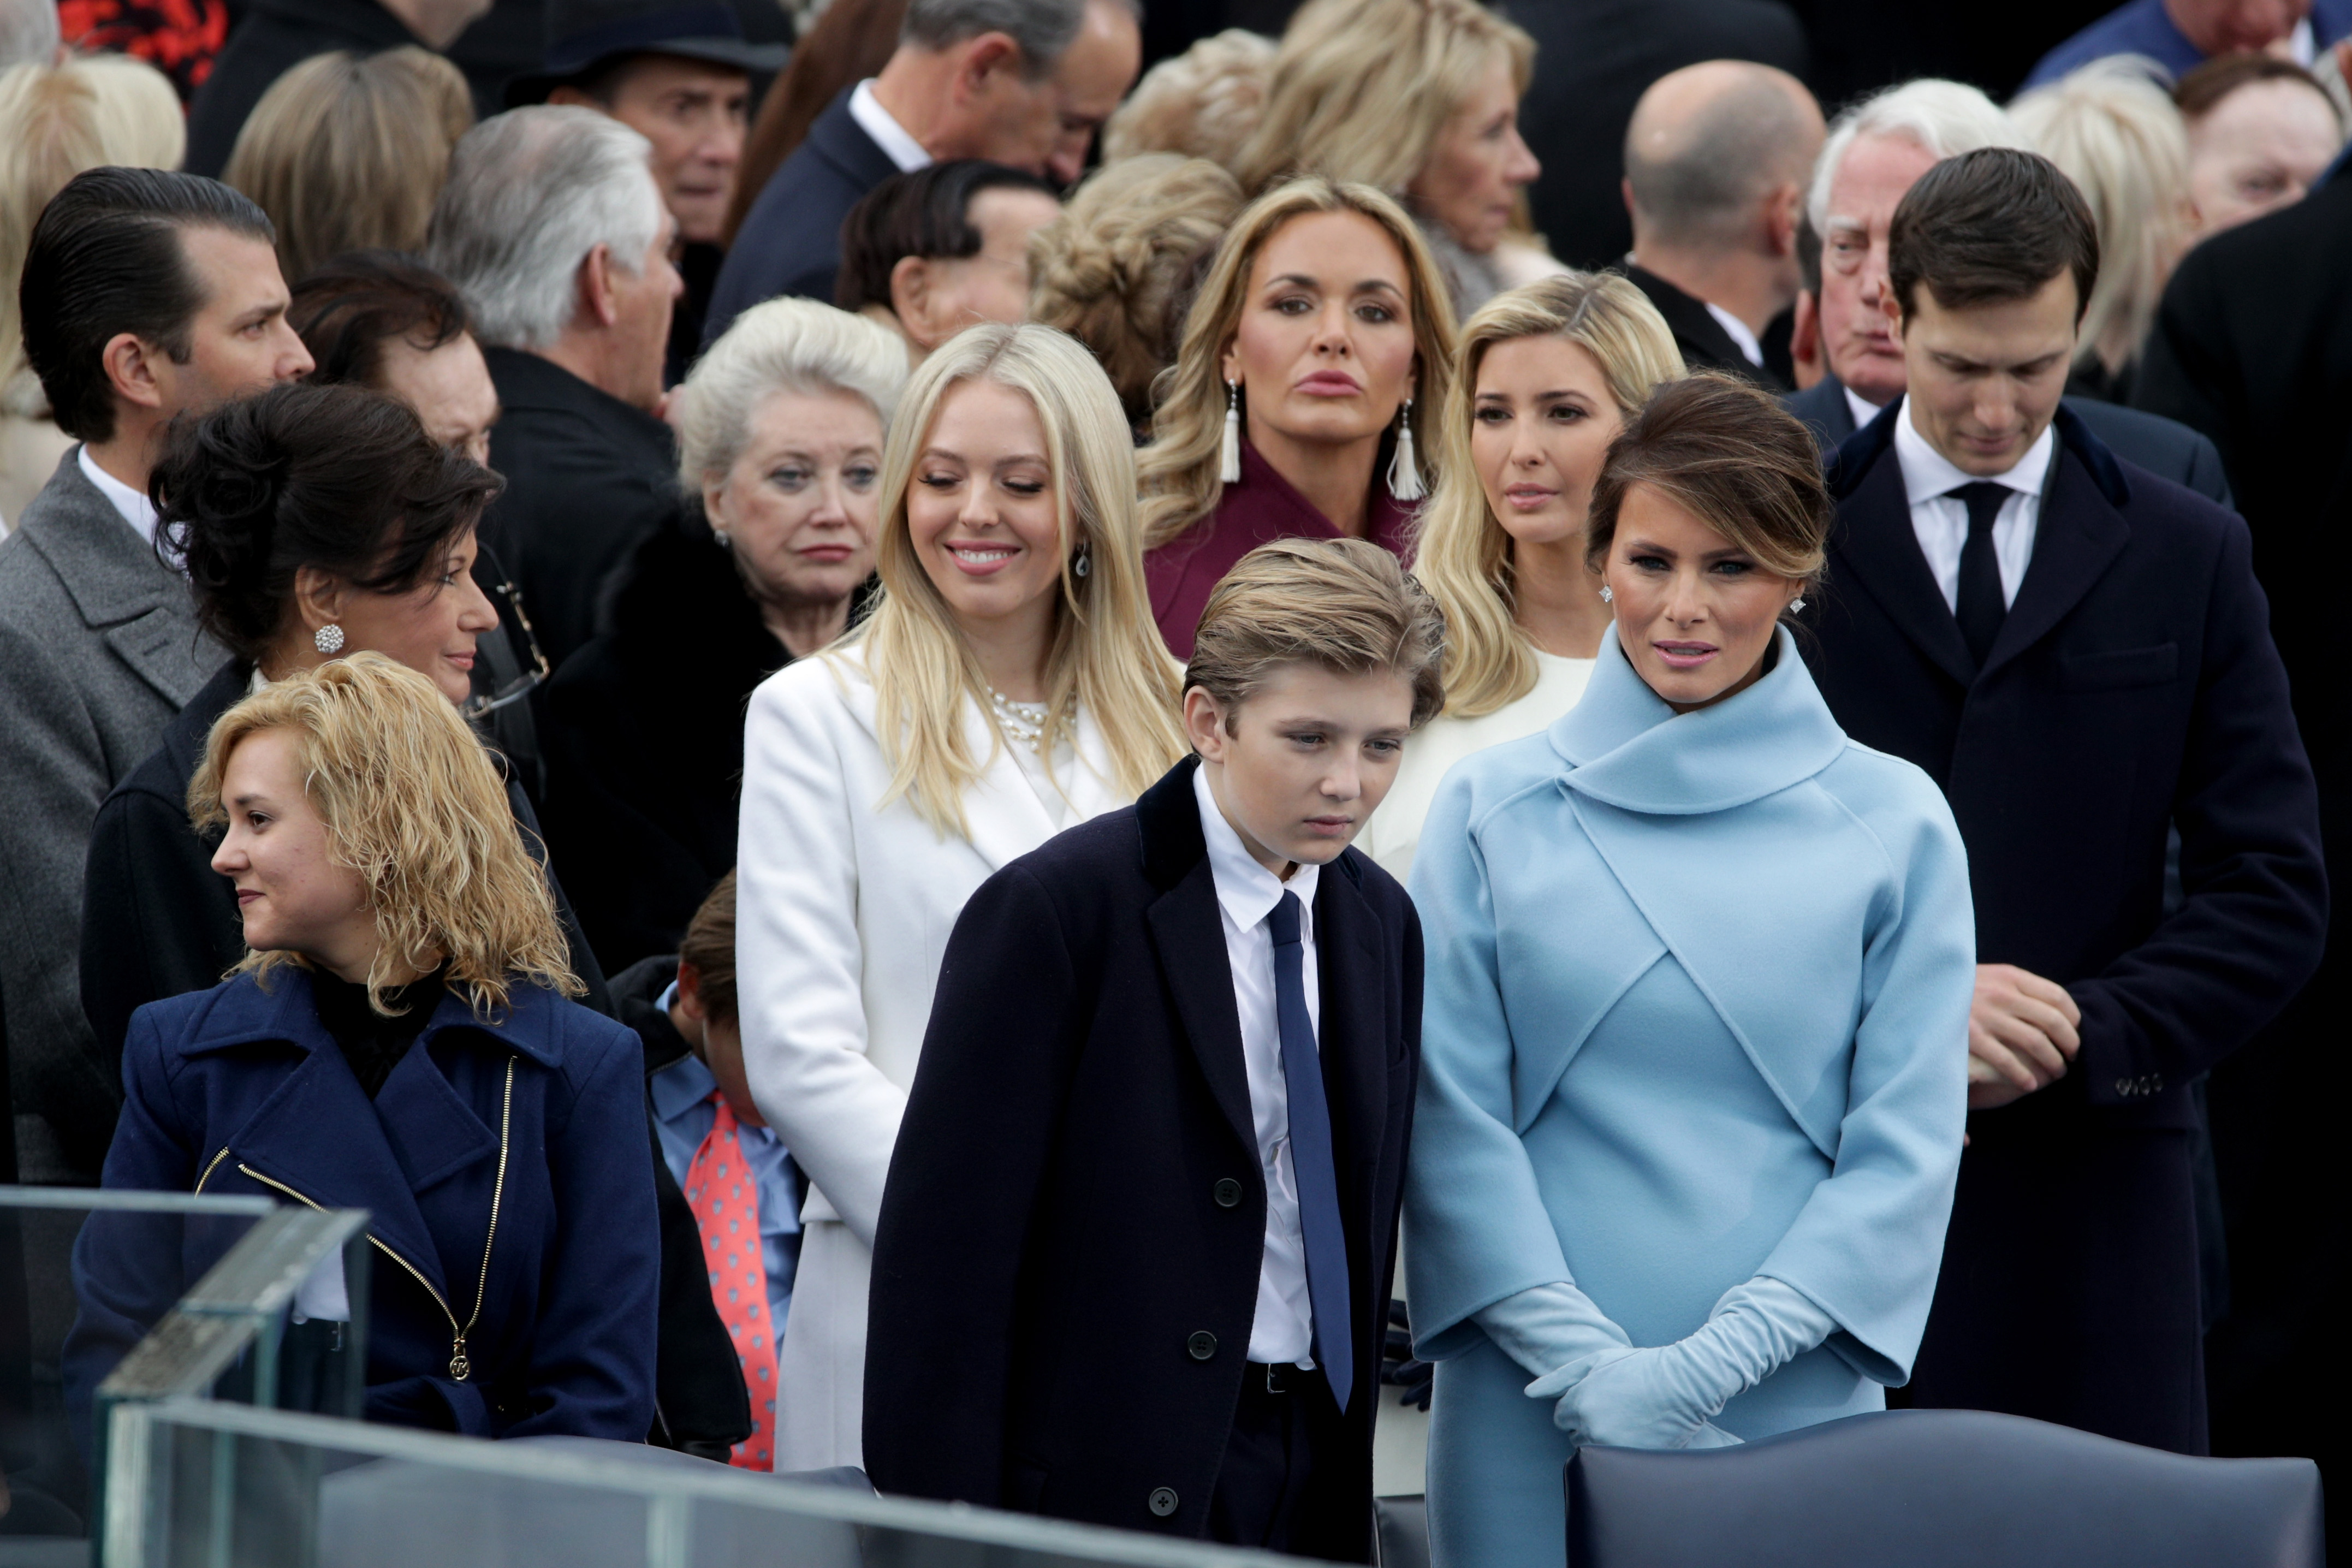 Съпругата и децата на Доналд Тръмп бяха плътно до него по време на церемонията за встъпването му в длъжност. Хилари Клинтън и бившият президент на САЩ Бил Клинтън също присъстваха на церемонията по встъпване в длъжност на новия президент.